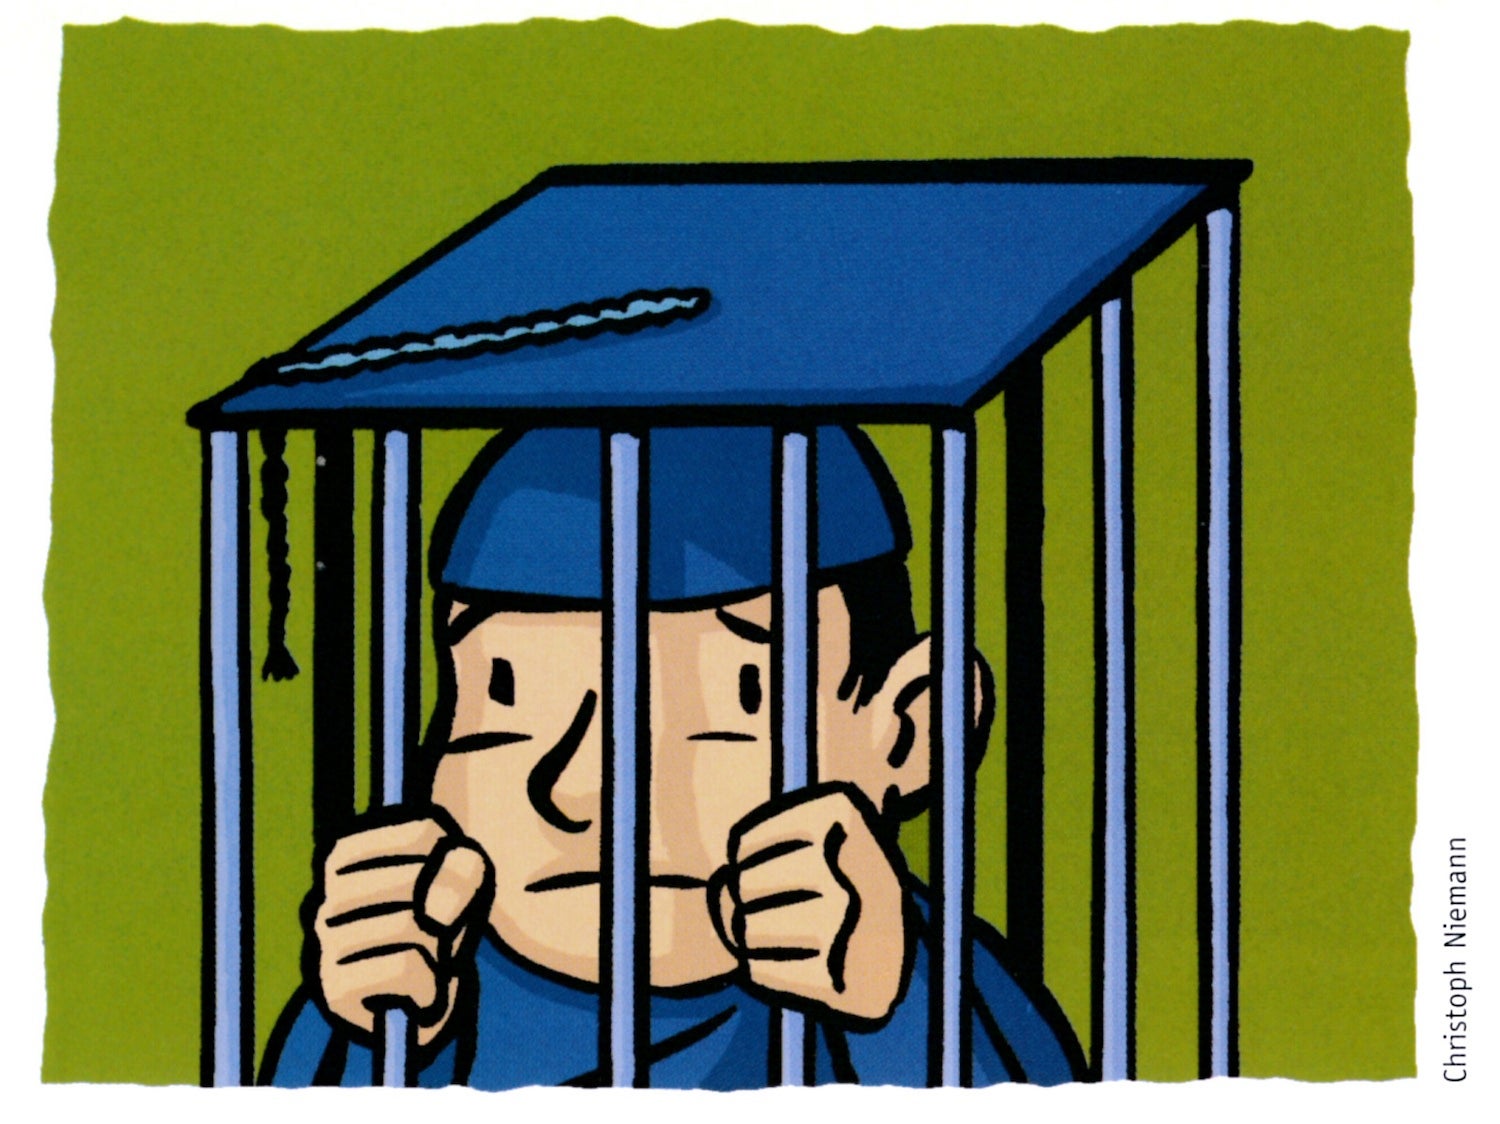 Illustration of graduate behind bars